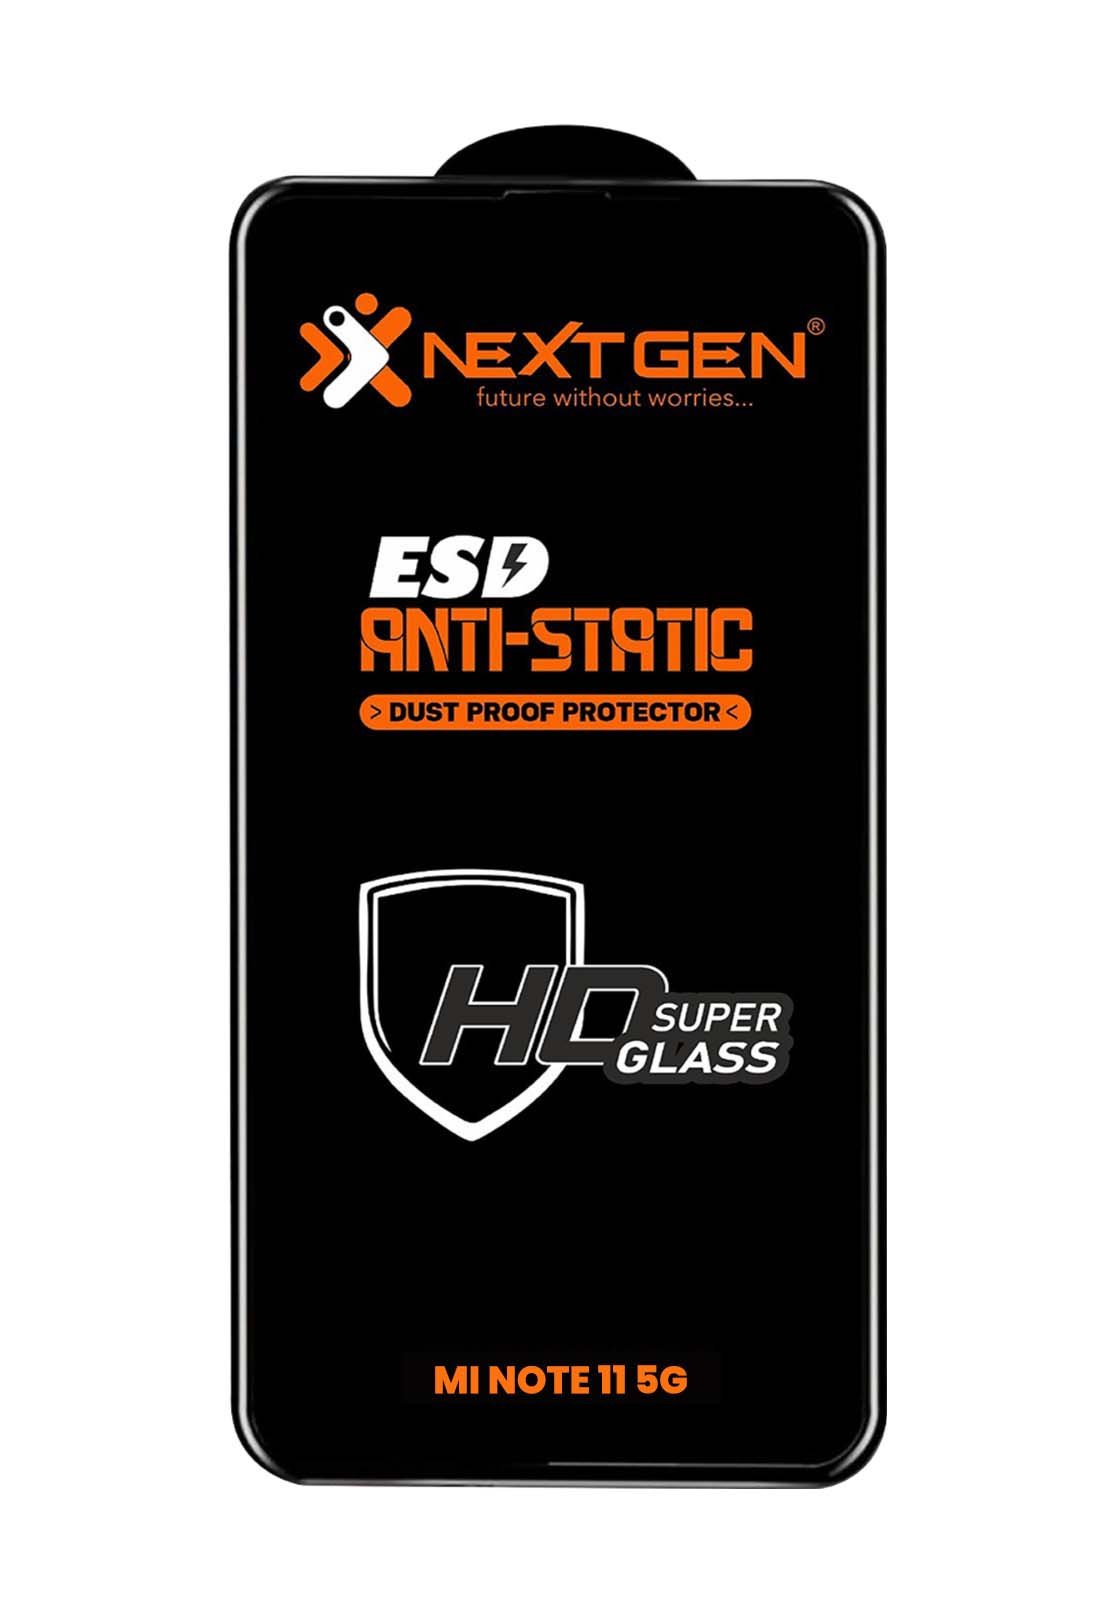 Note 11 5g Mi ESD Anti-Static HD Super Glass